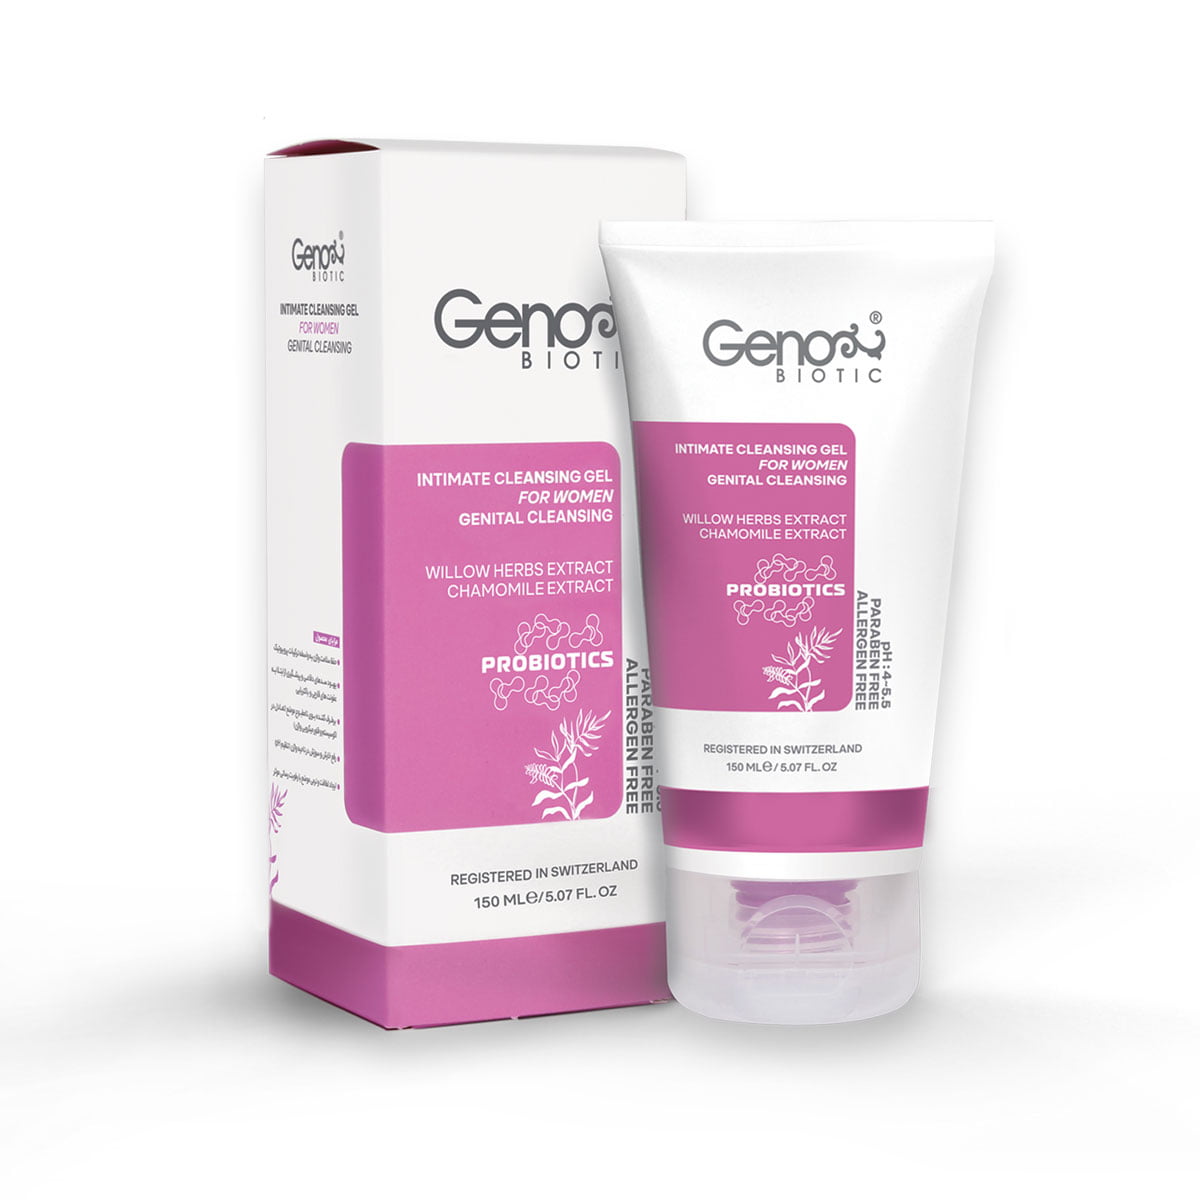 ژل بهداشتی پروبیوتیک بانوان ژنوبایوتیک 150 میلی لیتر Geno Biotic Intimate Cleansing Gel For Women 150 ml